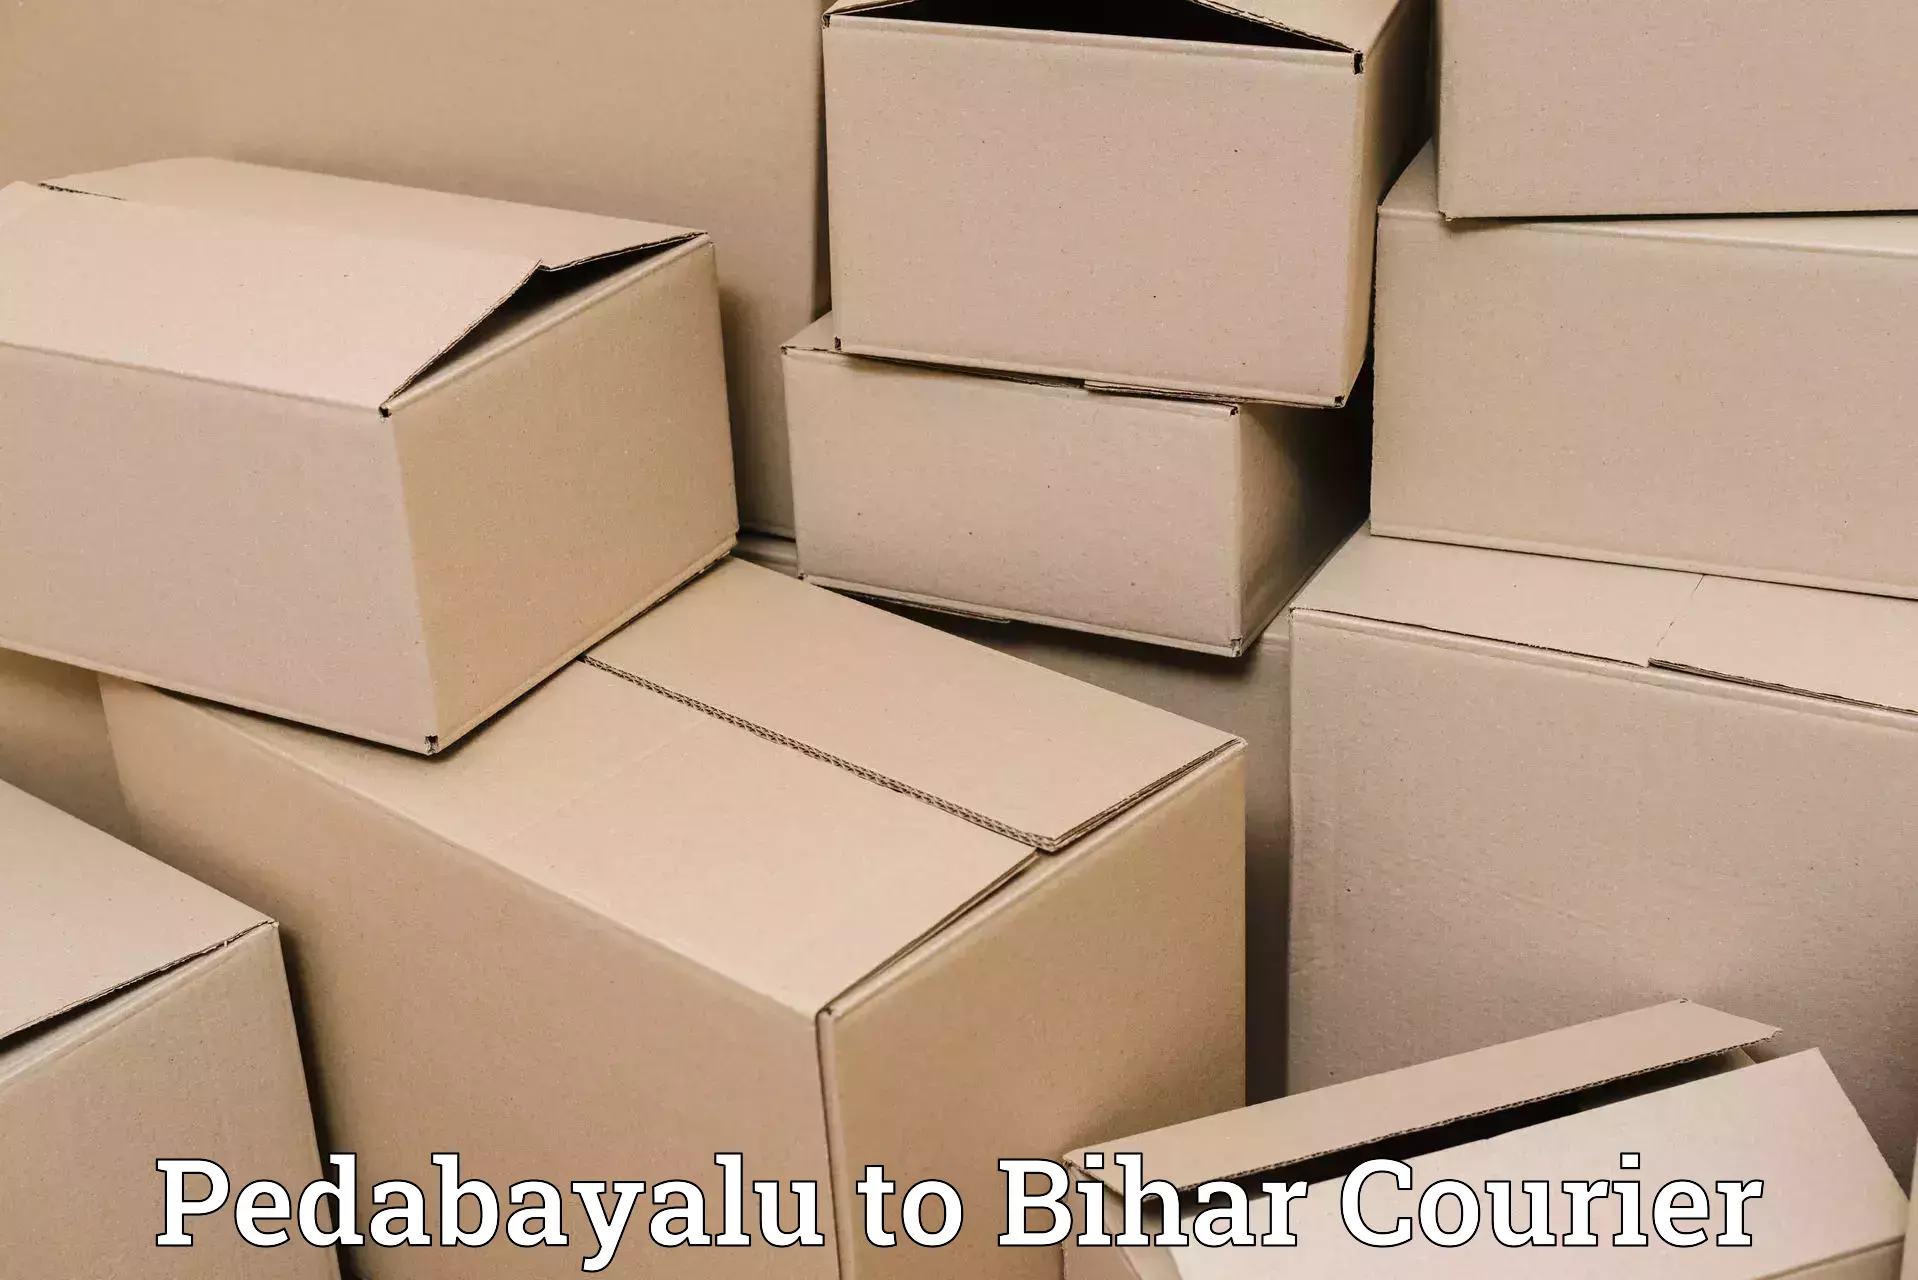 Flexible parcel services Pedabayalu to Bhorey